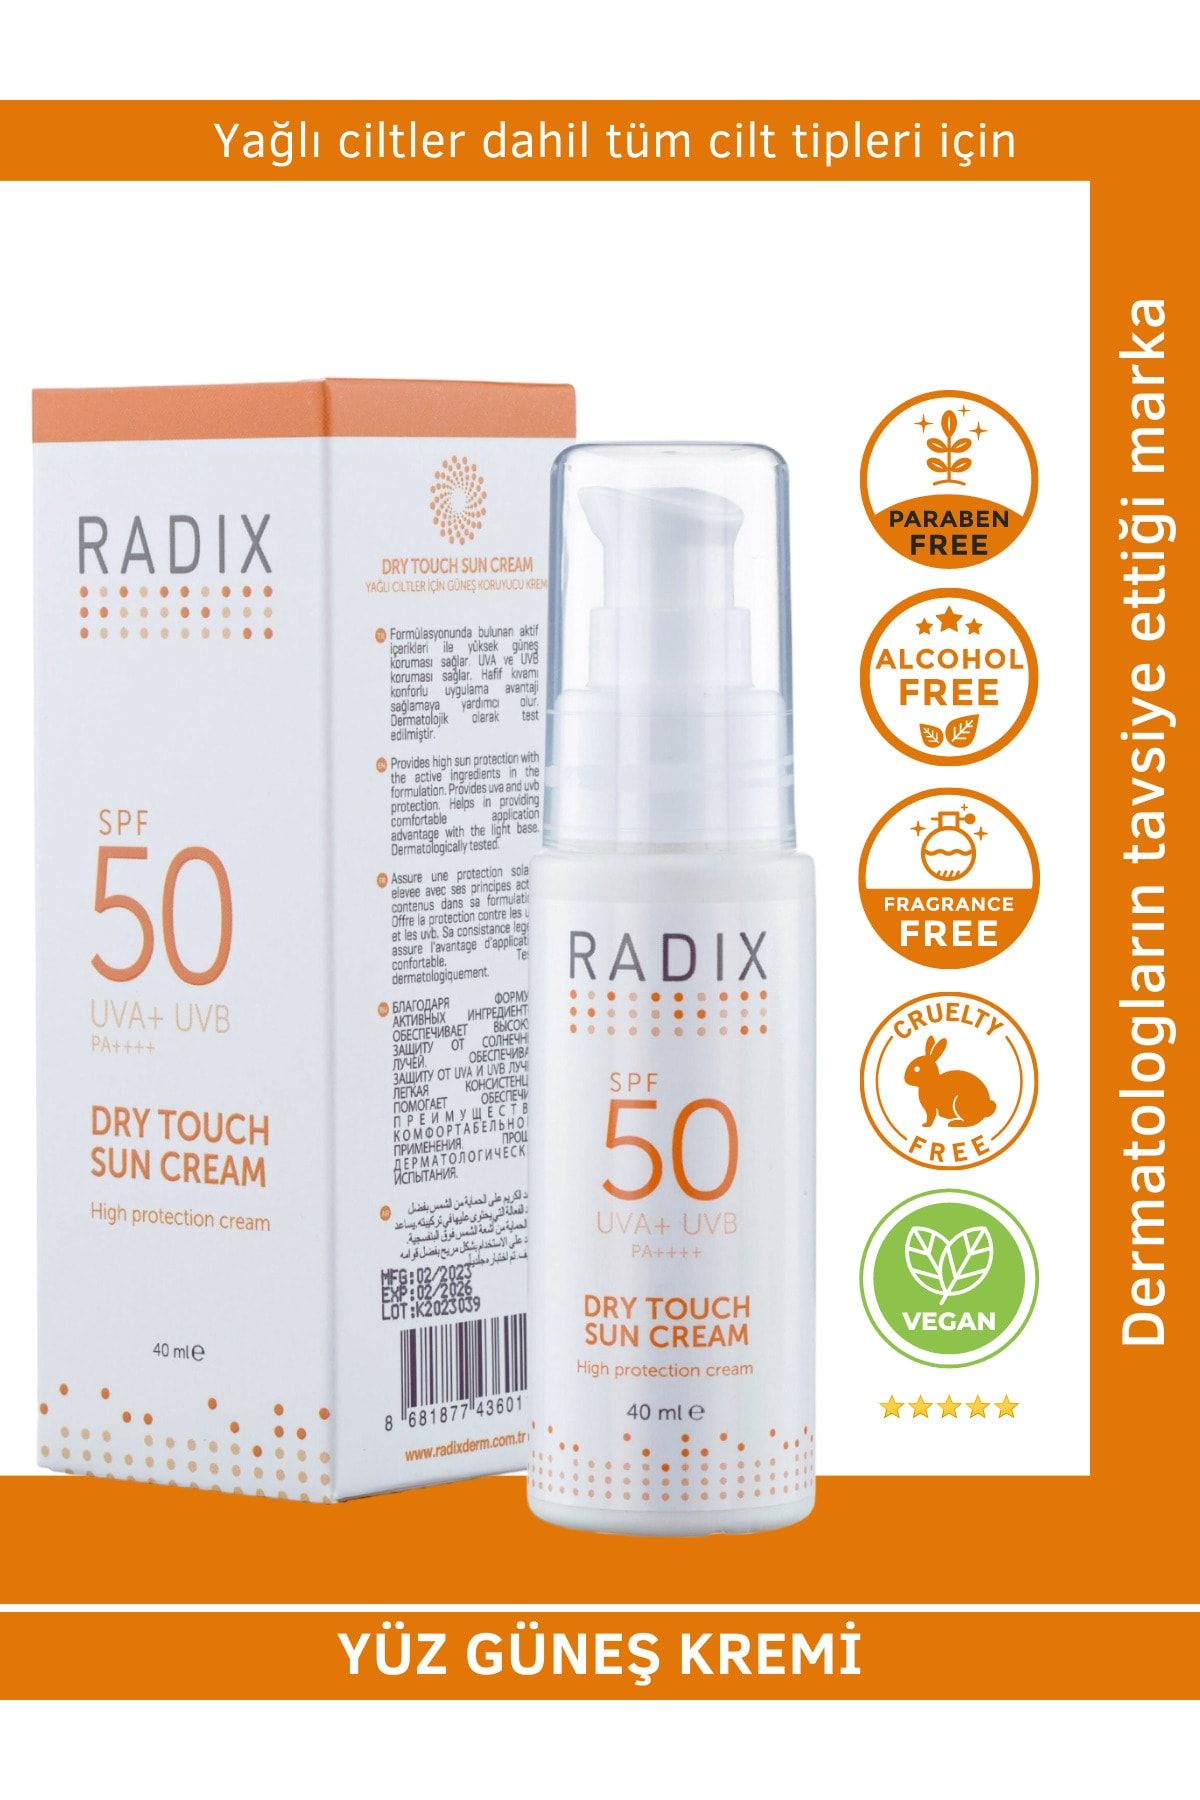 Radix Yüz Güneş Kremi Spf50+ Karma Ve Yağlı Ciltler - Dry Touch Sun Cream 40 Ml 8681877436011